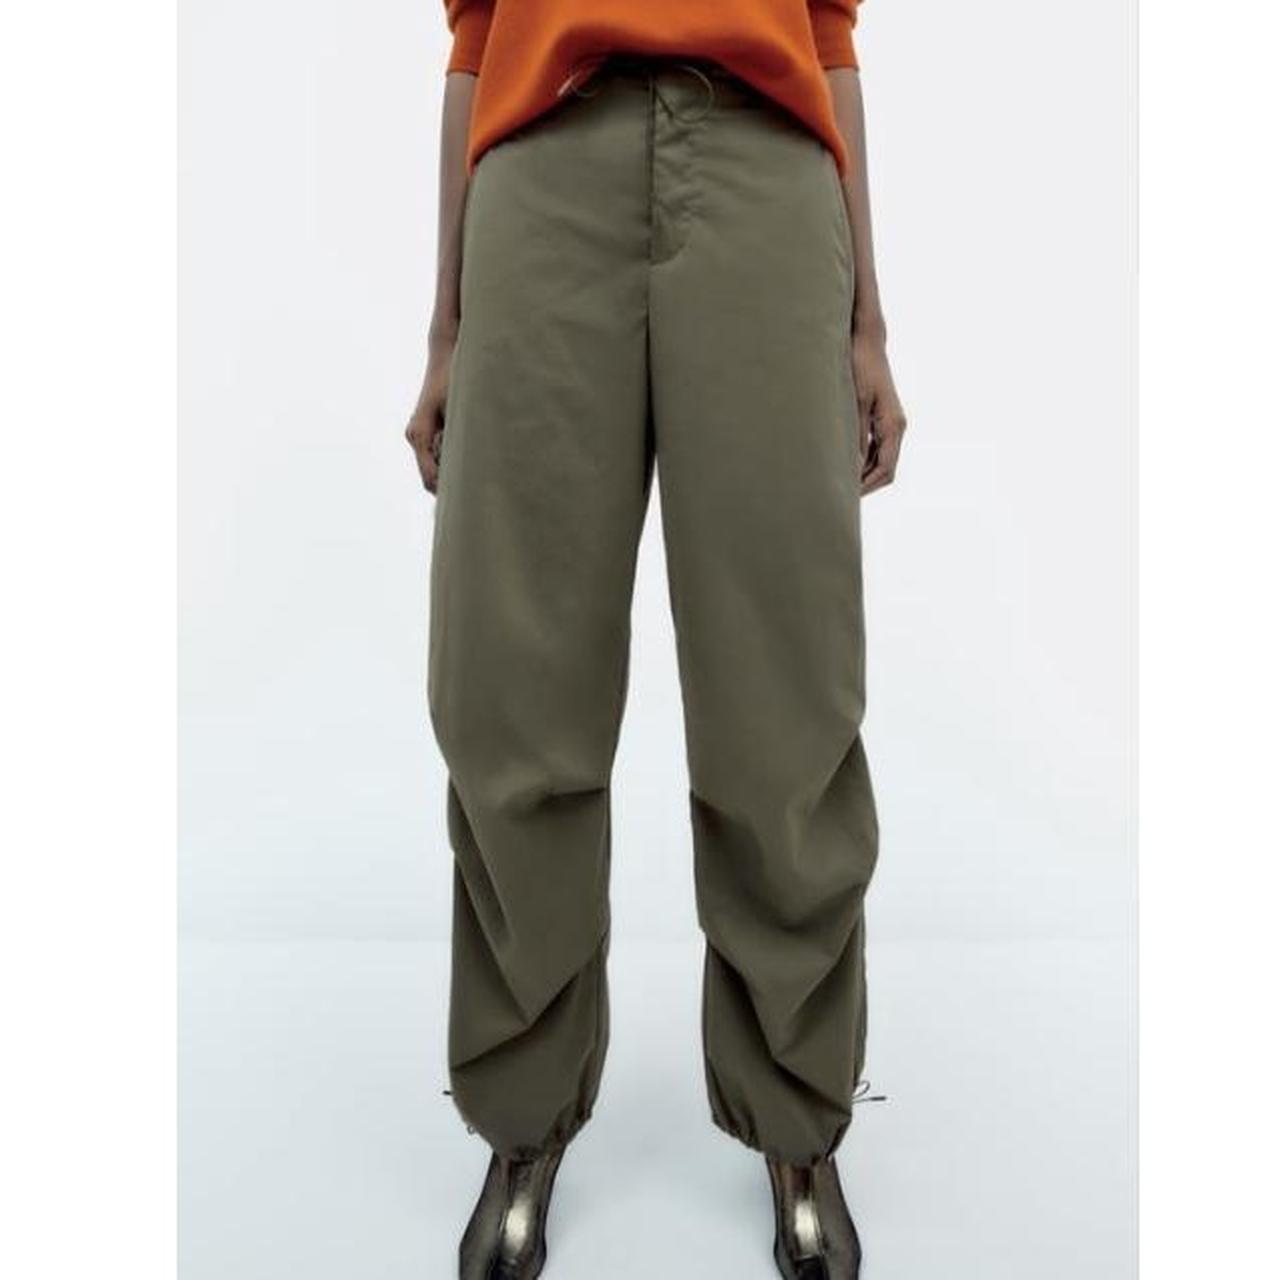 zara khaki green parachute pants/trousers size s... - Depop